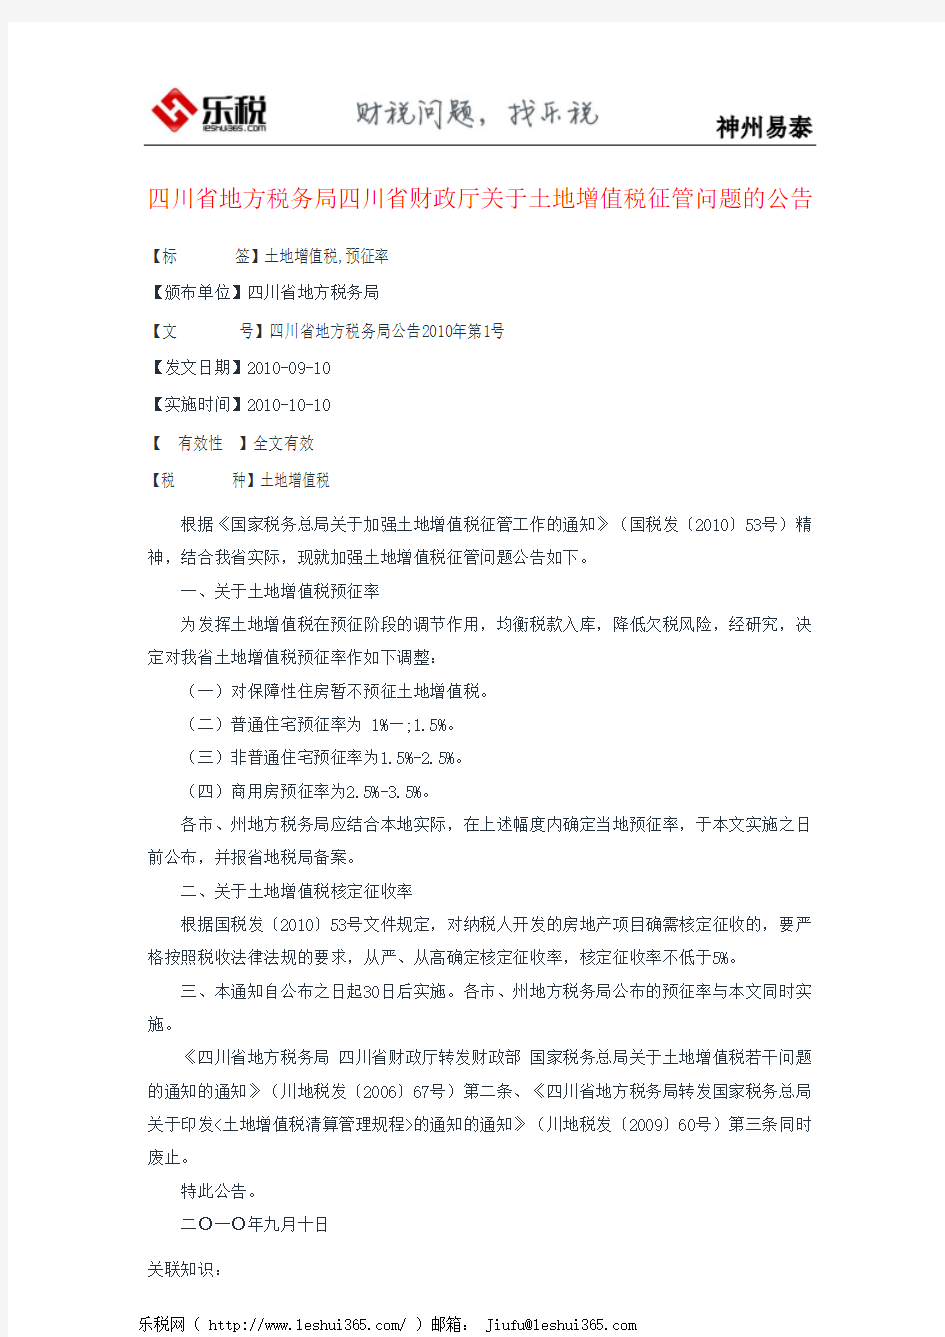 四川省地方税务局四川省财政厅关于土地增值税征管问题的公告